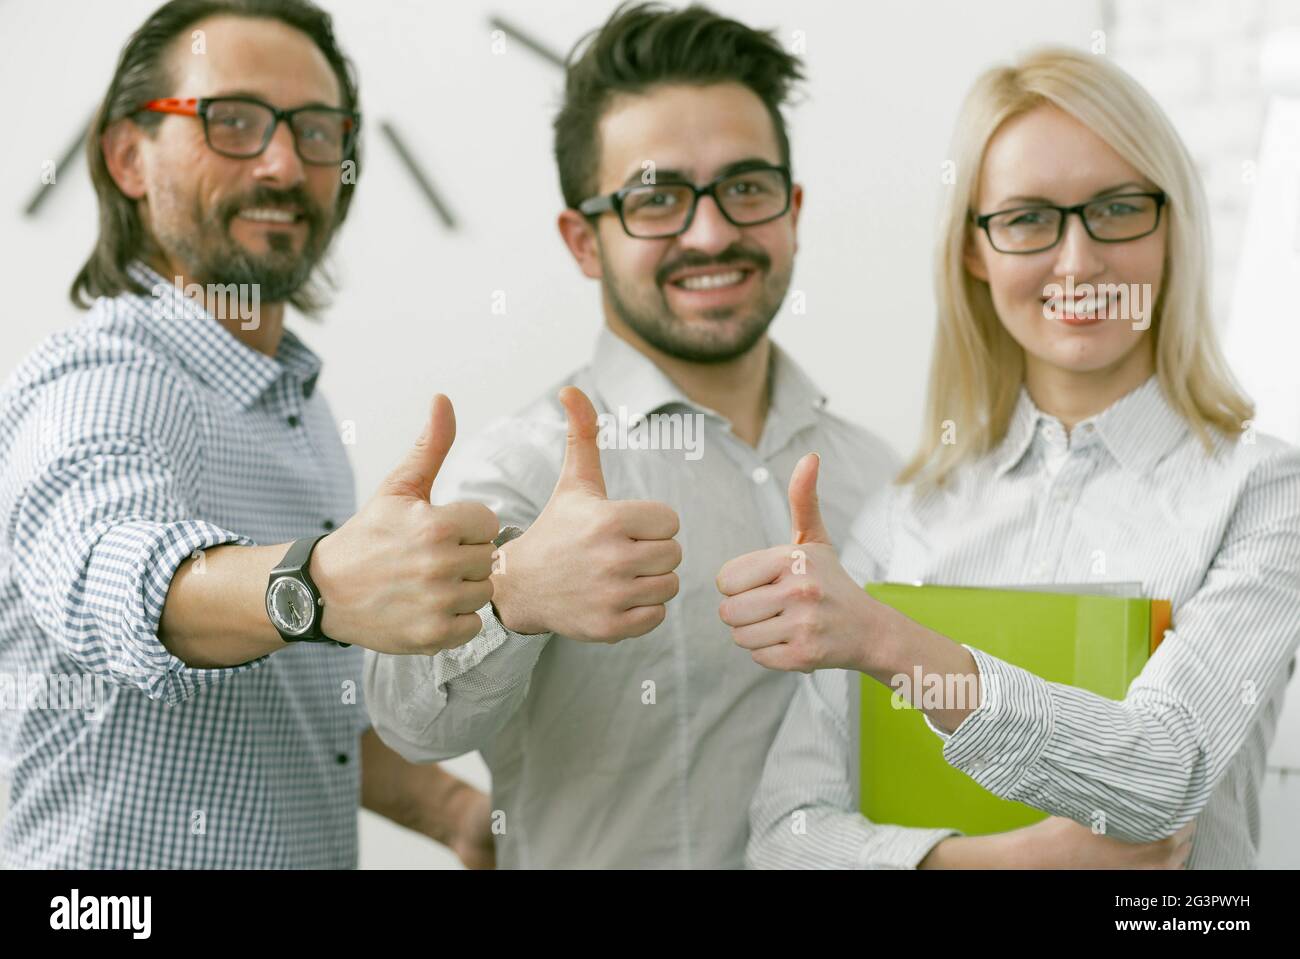 Geschäftsteam zeigt Daumen nach oben. Büroangestellte, die eine positive Stimmung ausdrücken, zeigen ein Daumen-hoch-Zeichen, das alles bedeutet Stockfoto